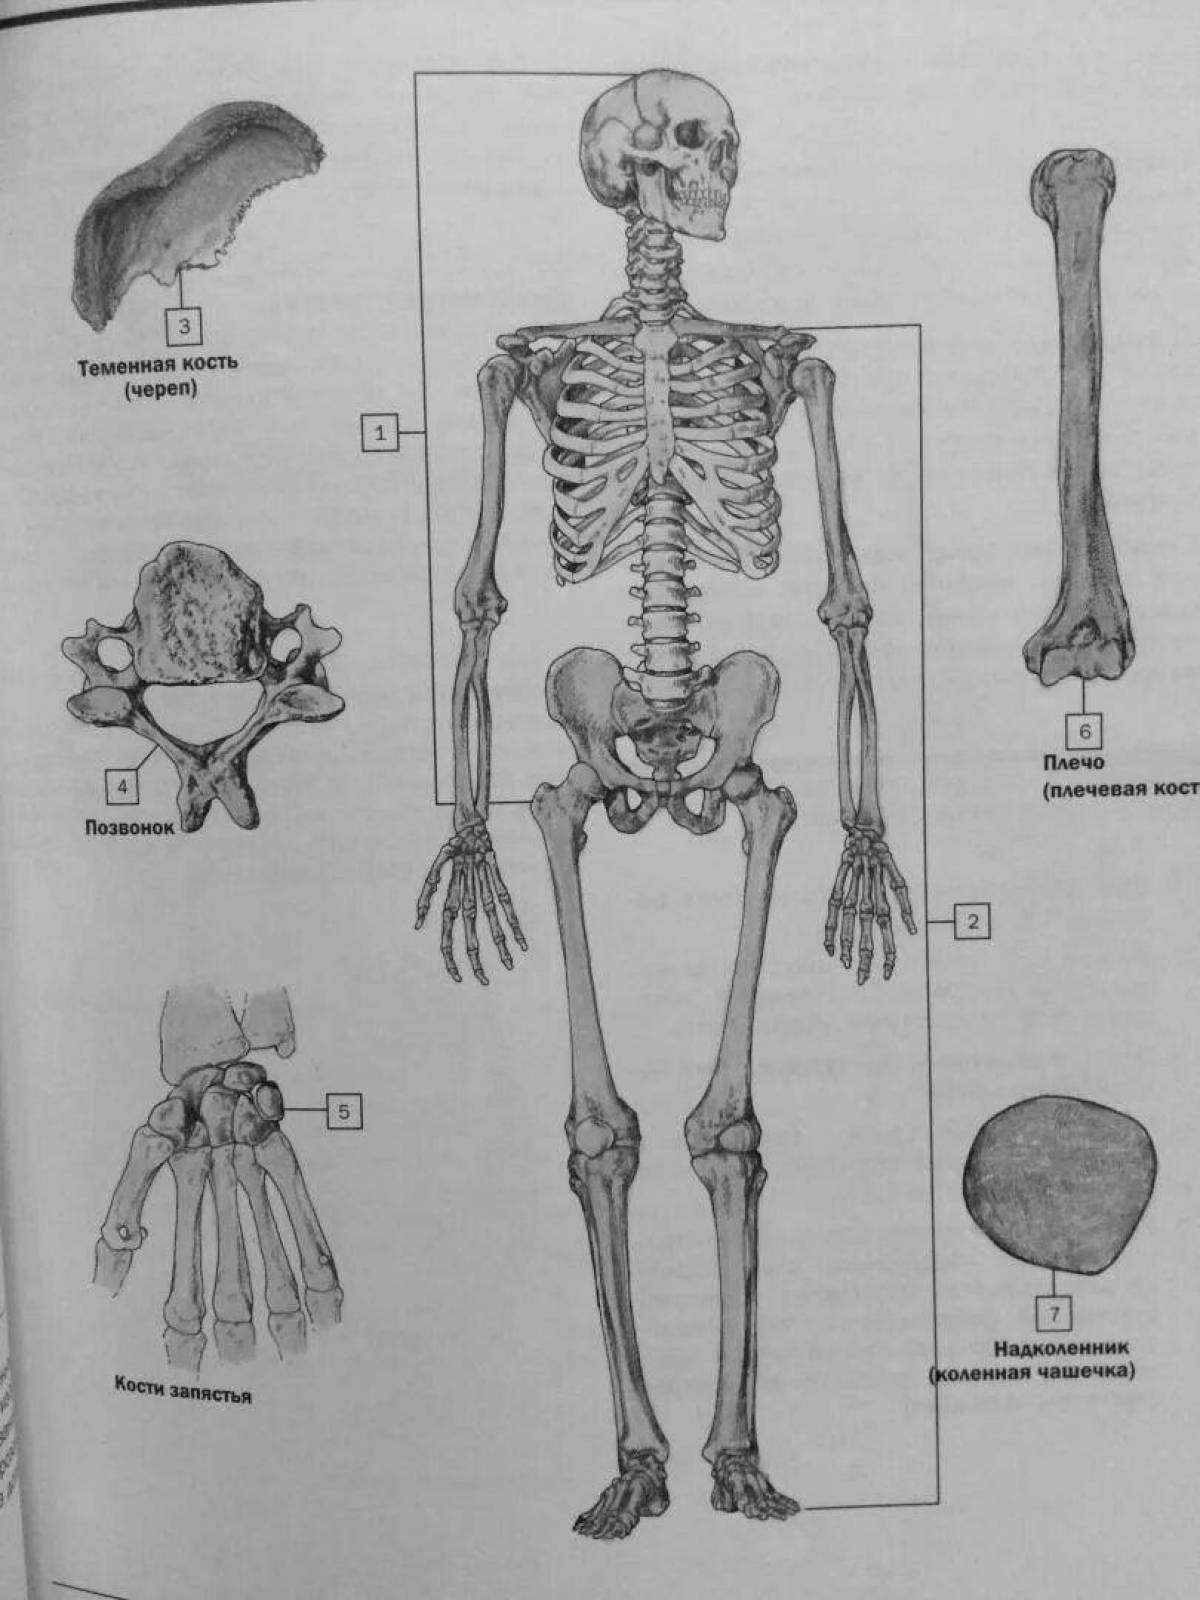 Coloring book Splendid netter's anatomy atlas